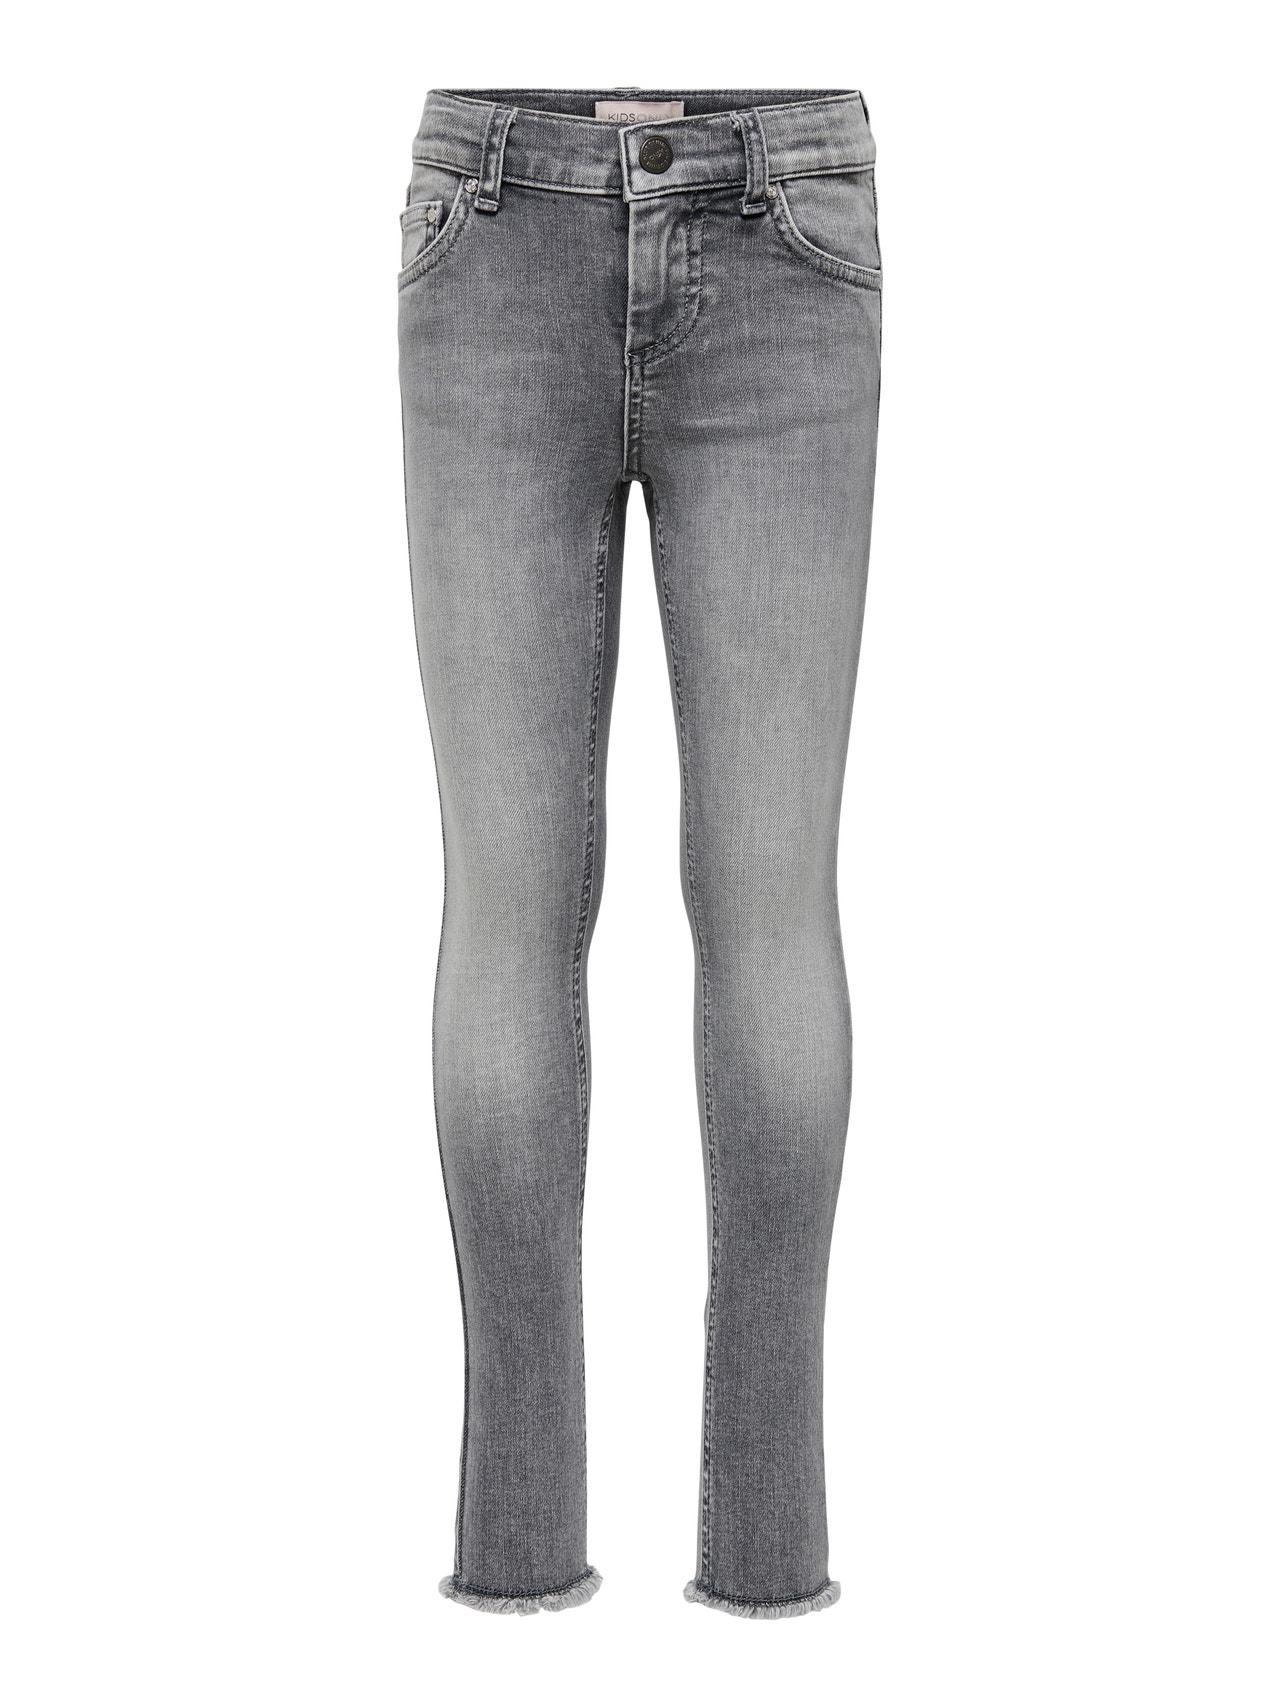 ONLY Skinny Fit Raw hems Jeans -Grey Denim - 15173843